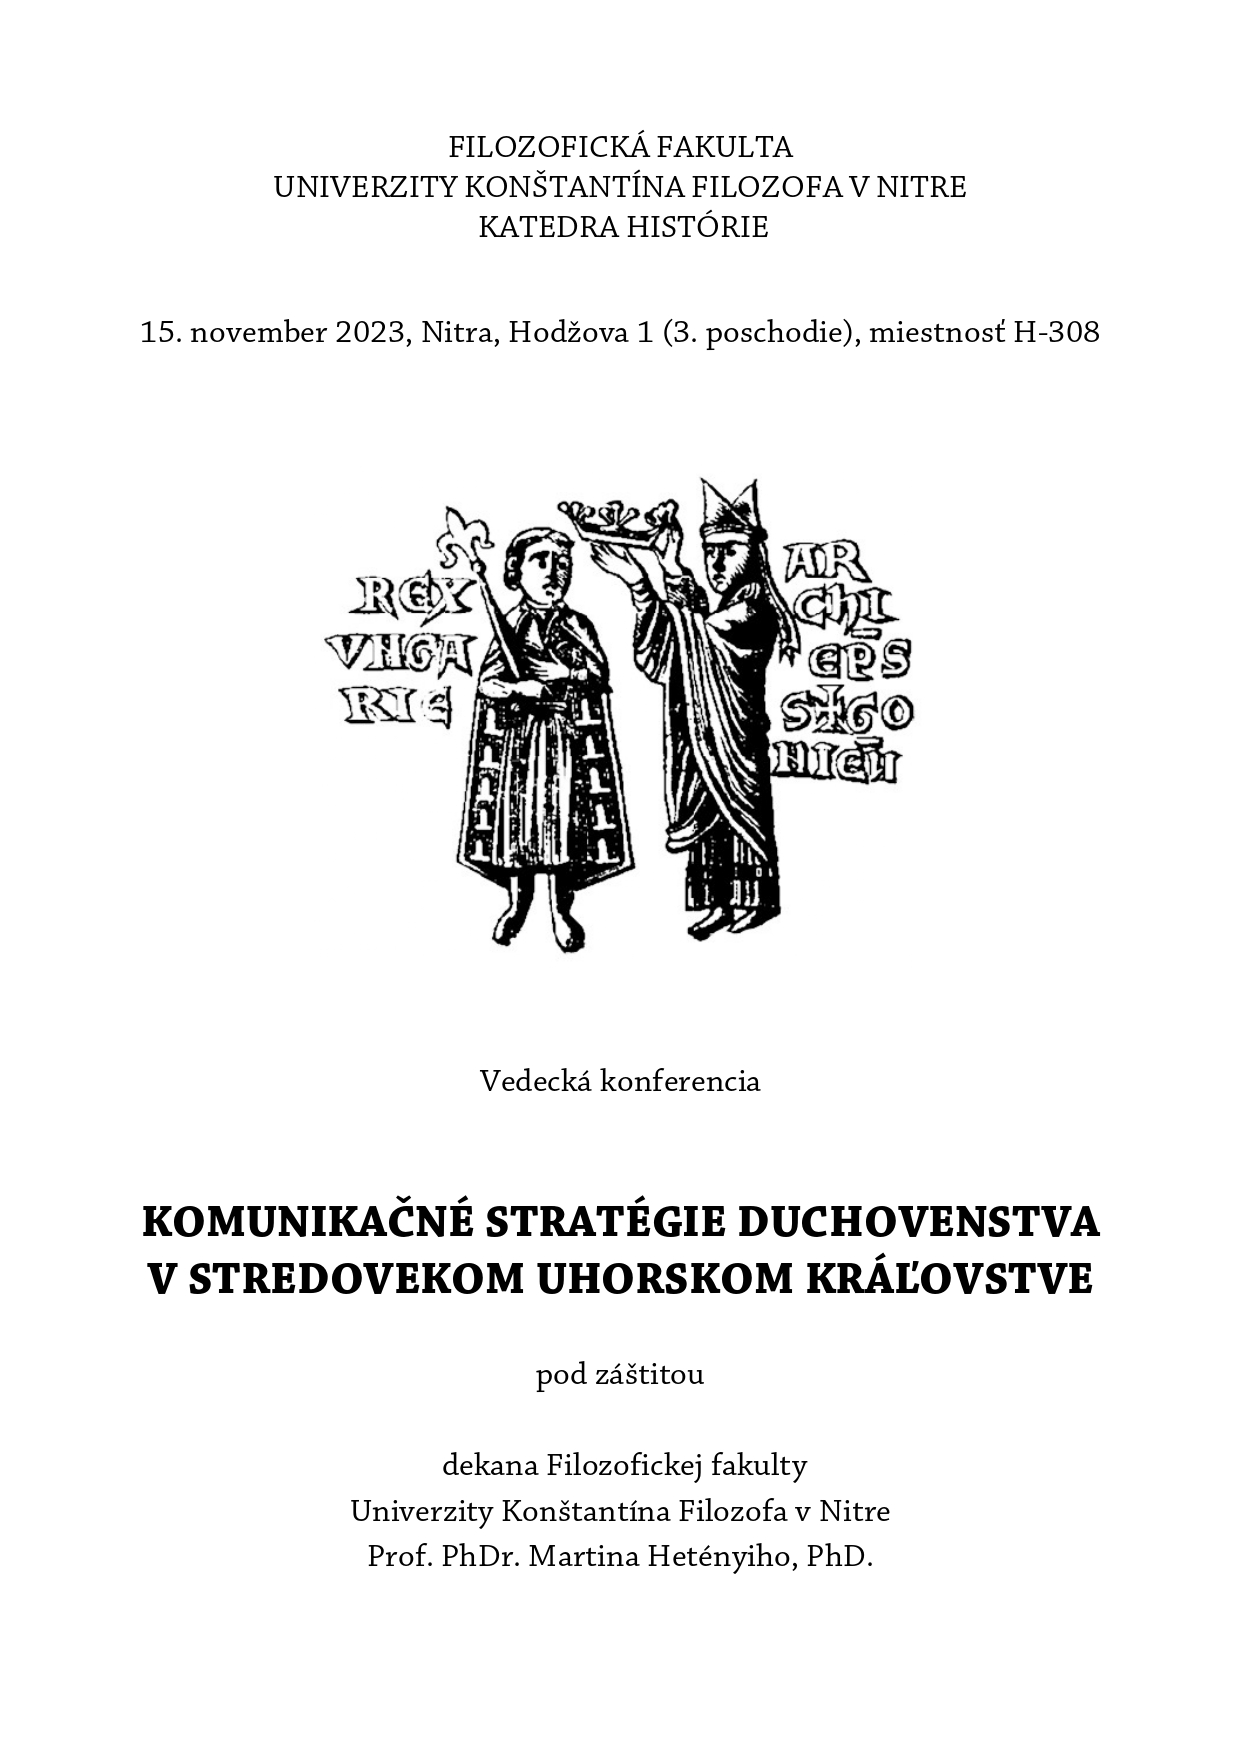 Komunikačné stratégie duchovenstva v stredovekom Uhorskom kráľovstve